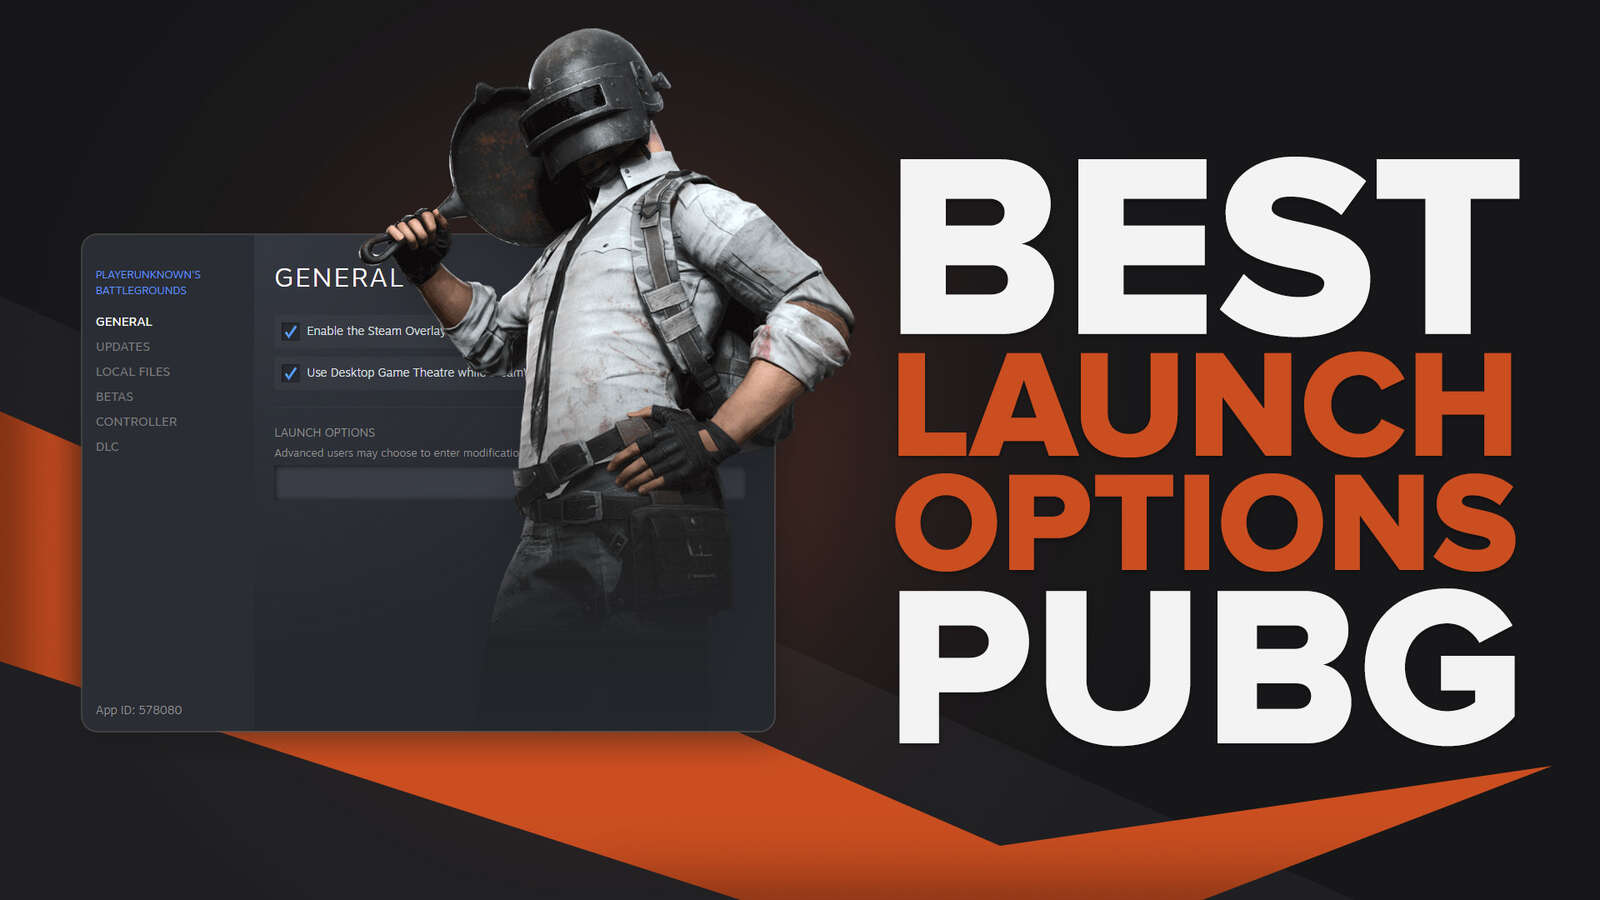 Best Launch Options PUBG